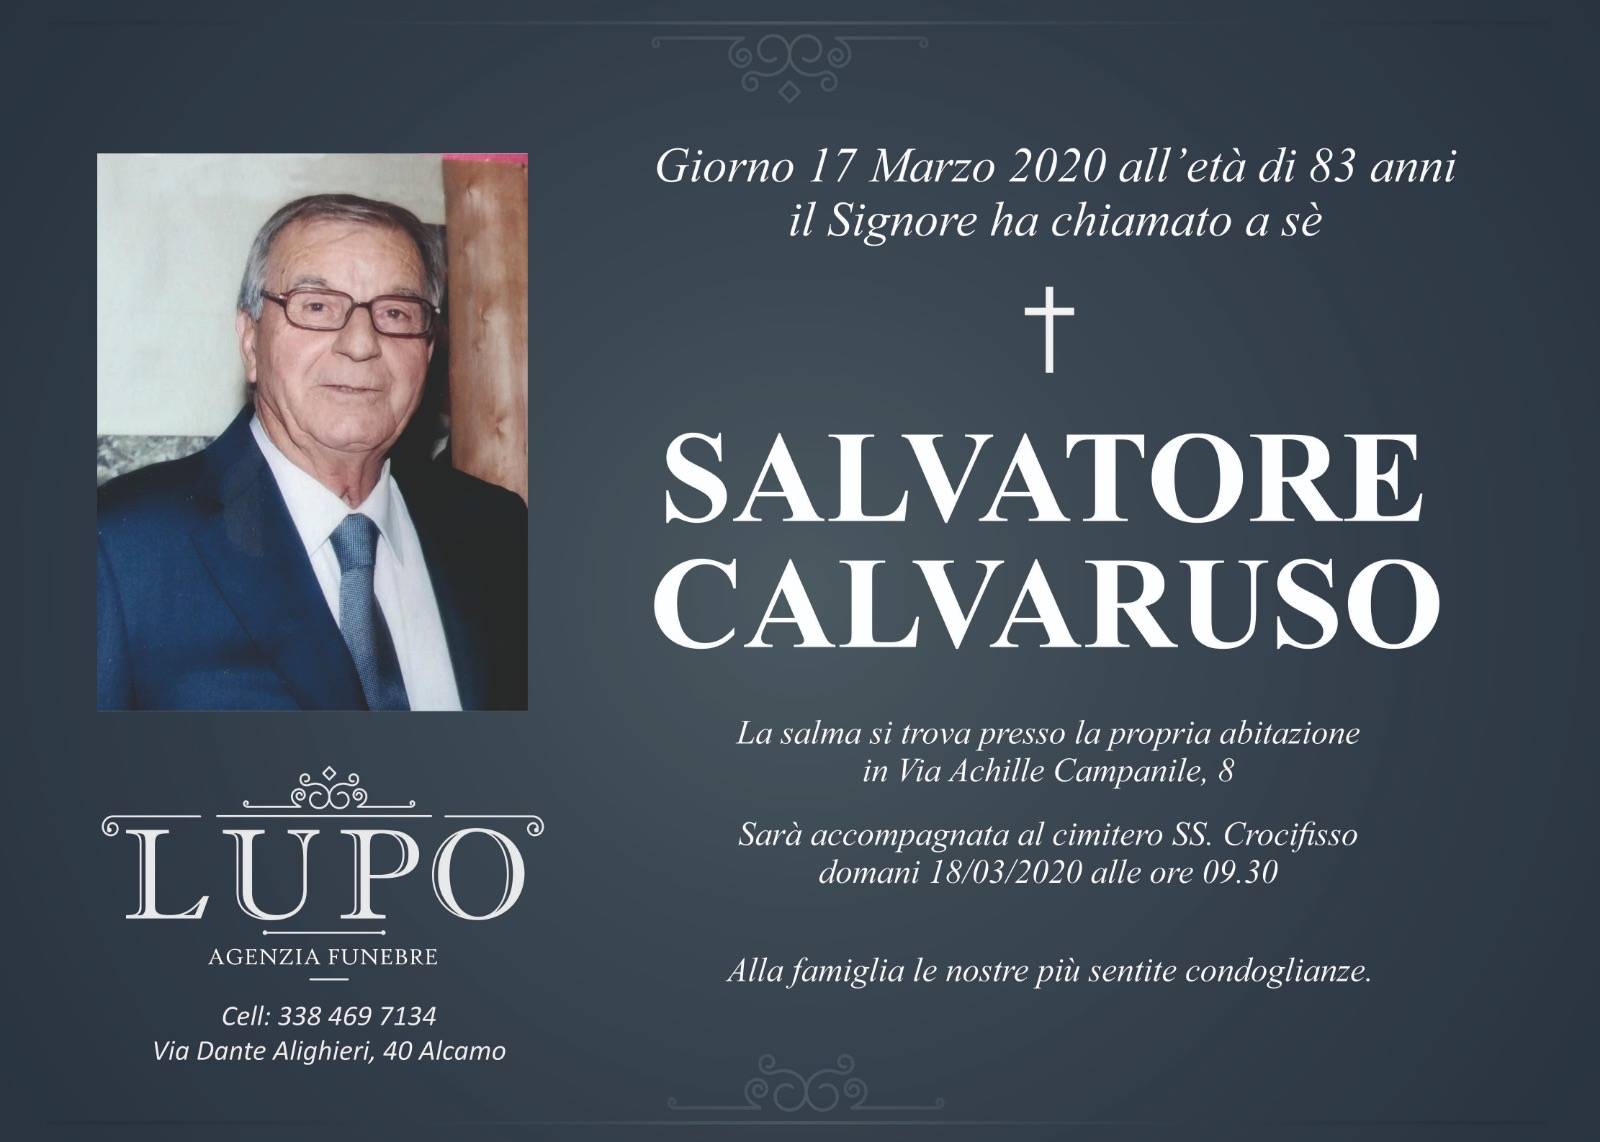 Salvatore Calvaruso